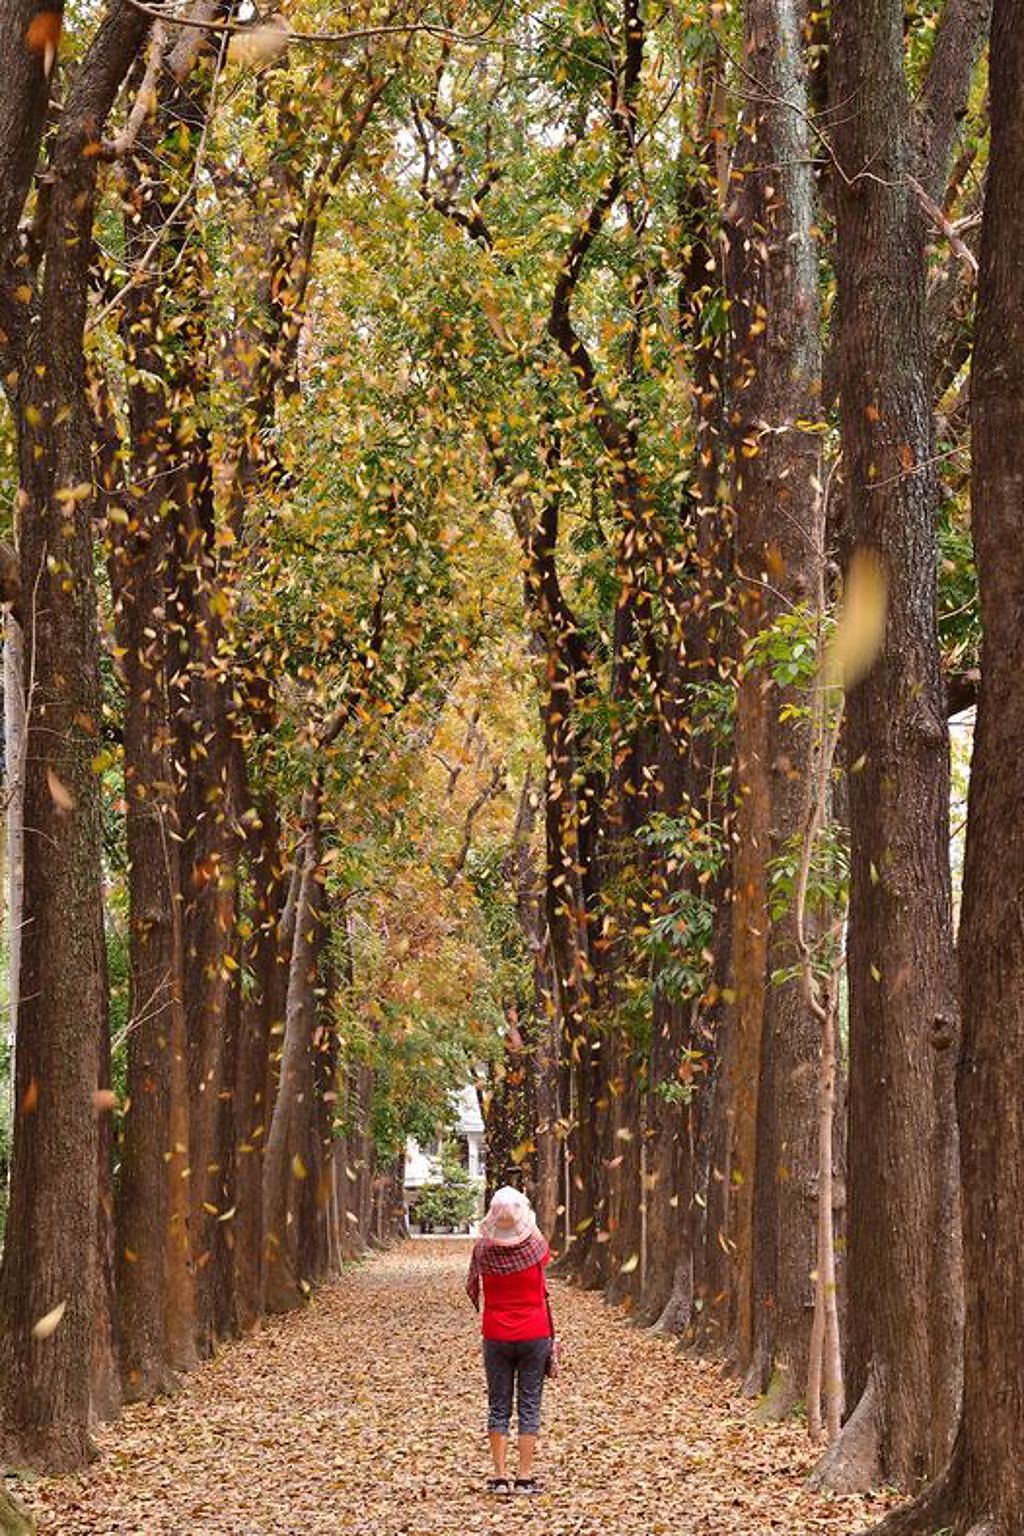 桃花心木正逢金黃浪漫的落葉期，紅黃色落葉漸漸降下林間步道，氛圍顯得詩情畫意，彷彿置身國外一般，是網美熱門打卡景點。(茂管處提供/林雅惠高雄傳真)